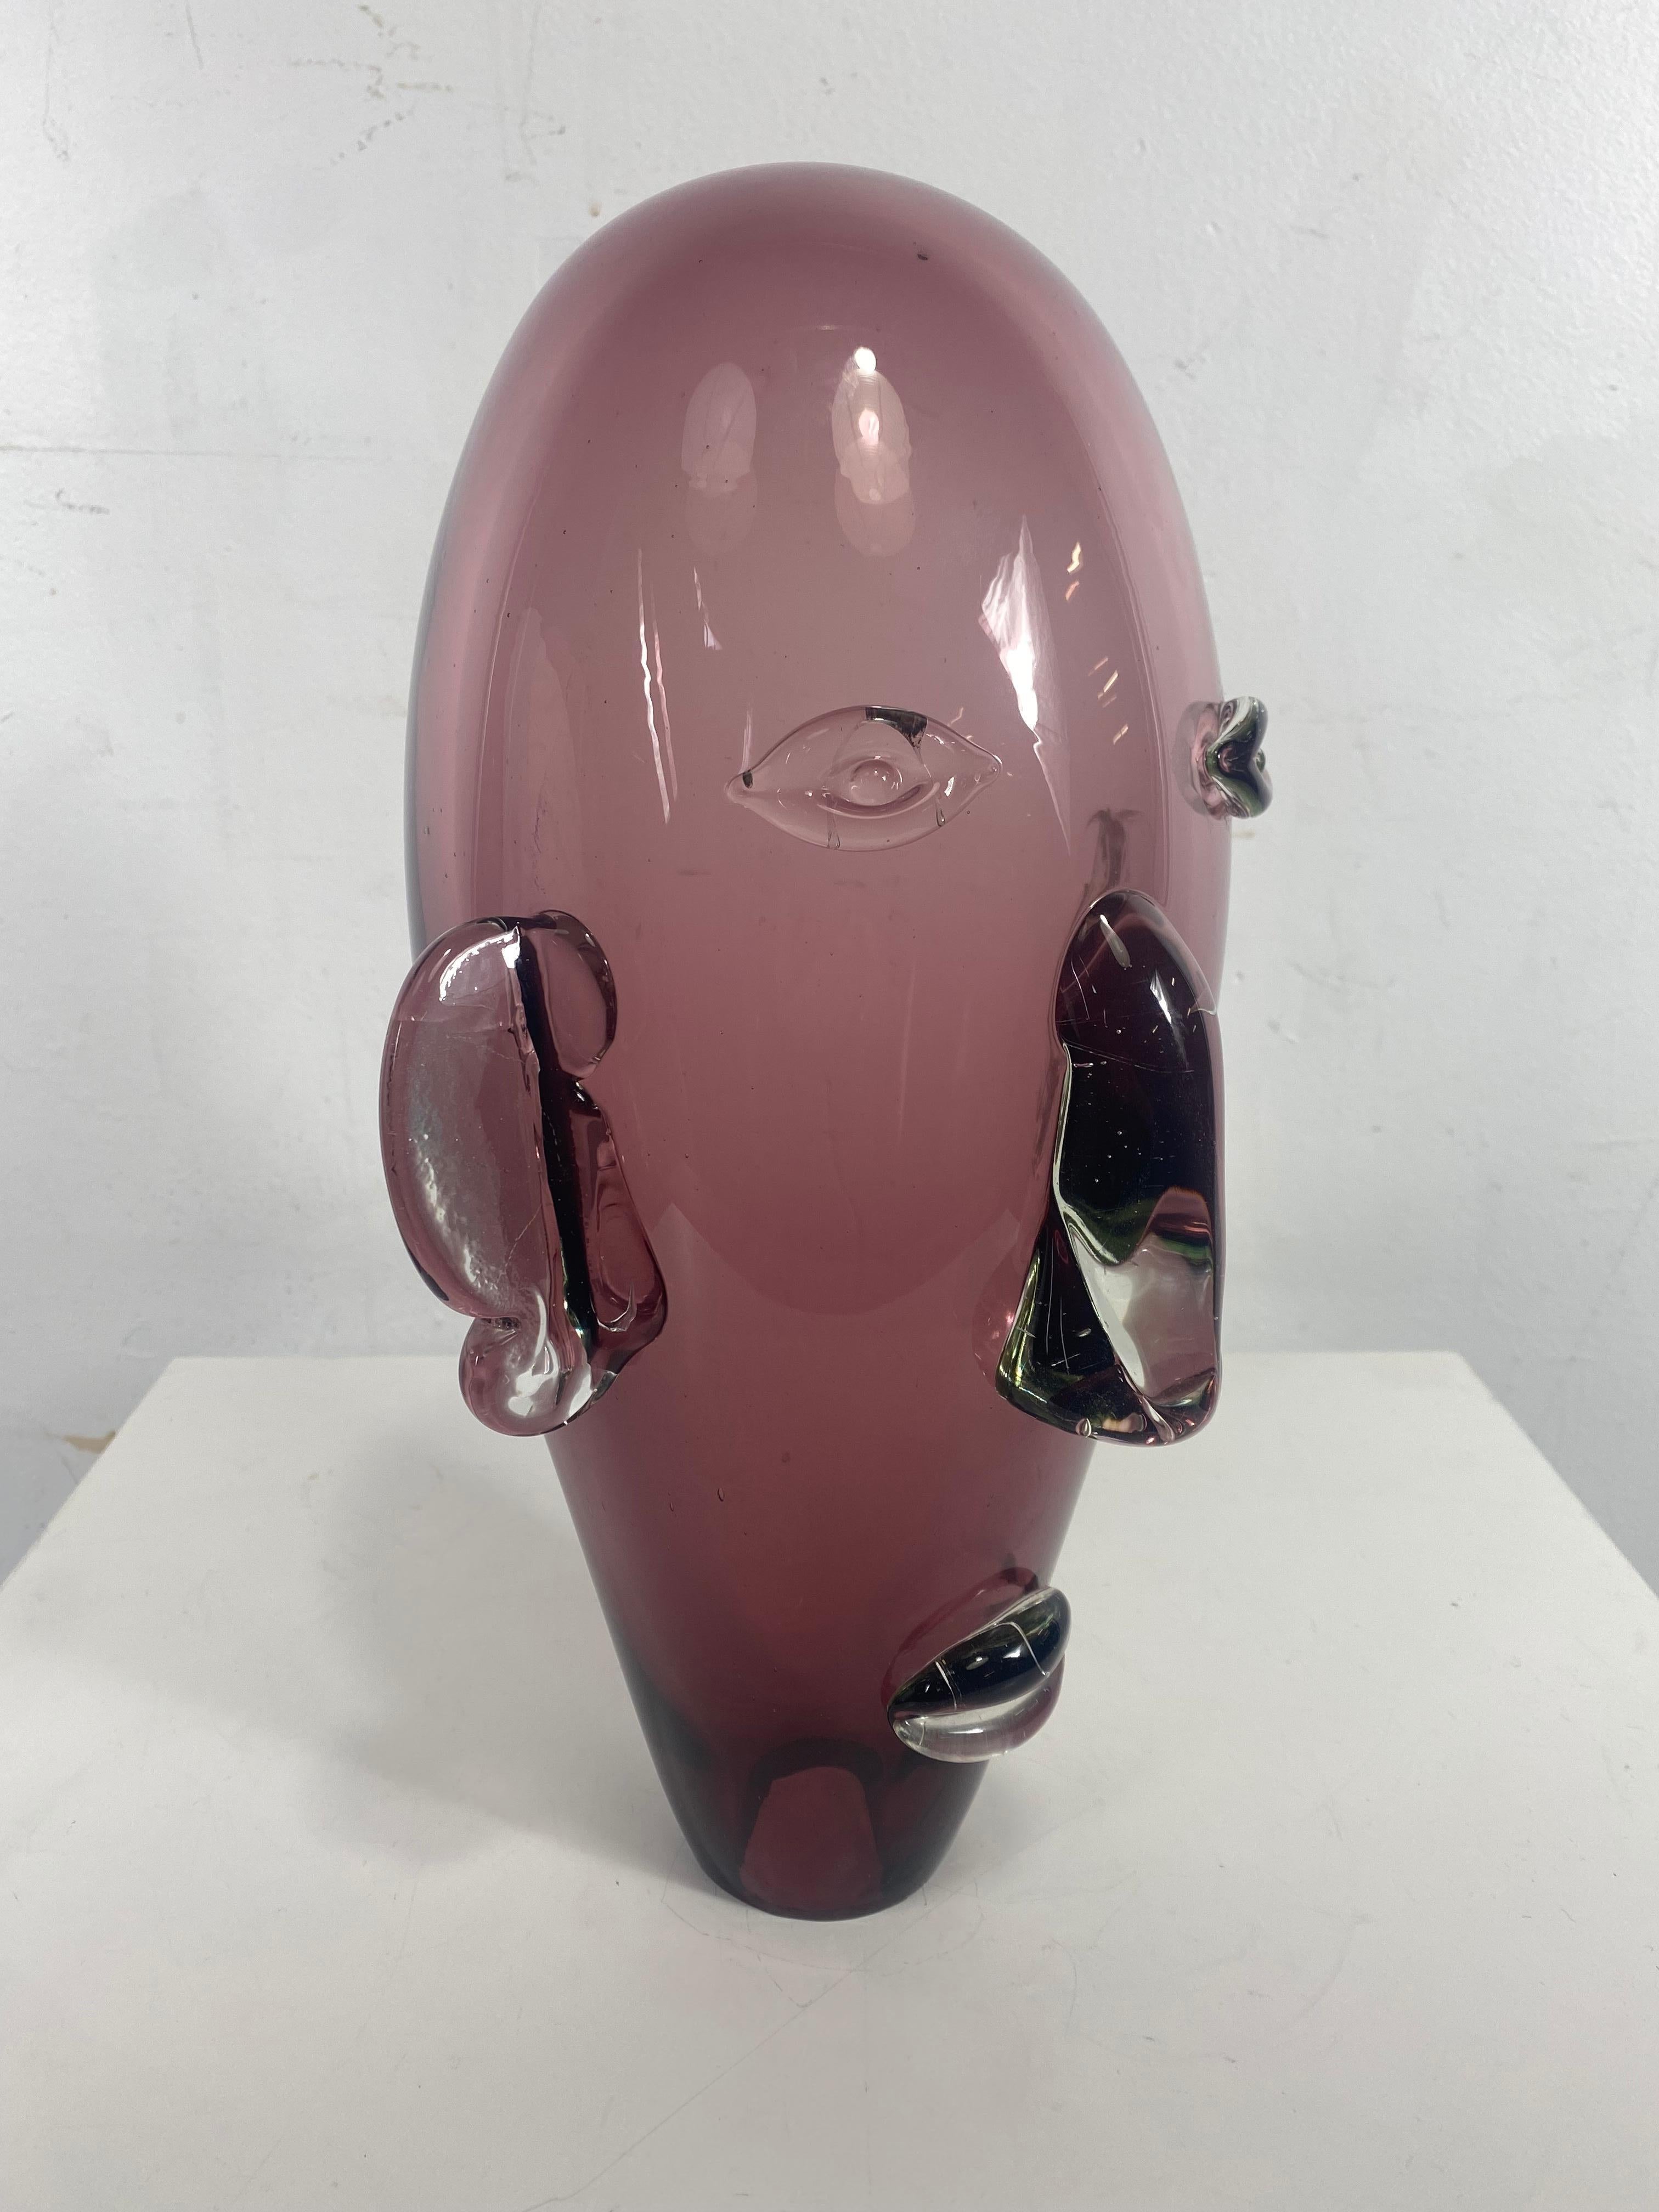 Murano glass head / face sculpture / art glass, modernist design.